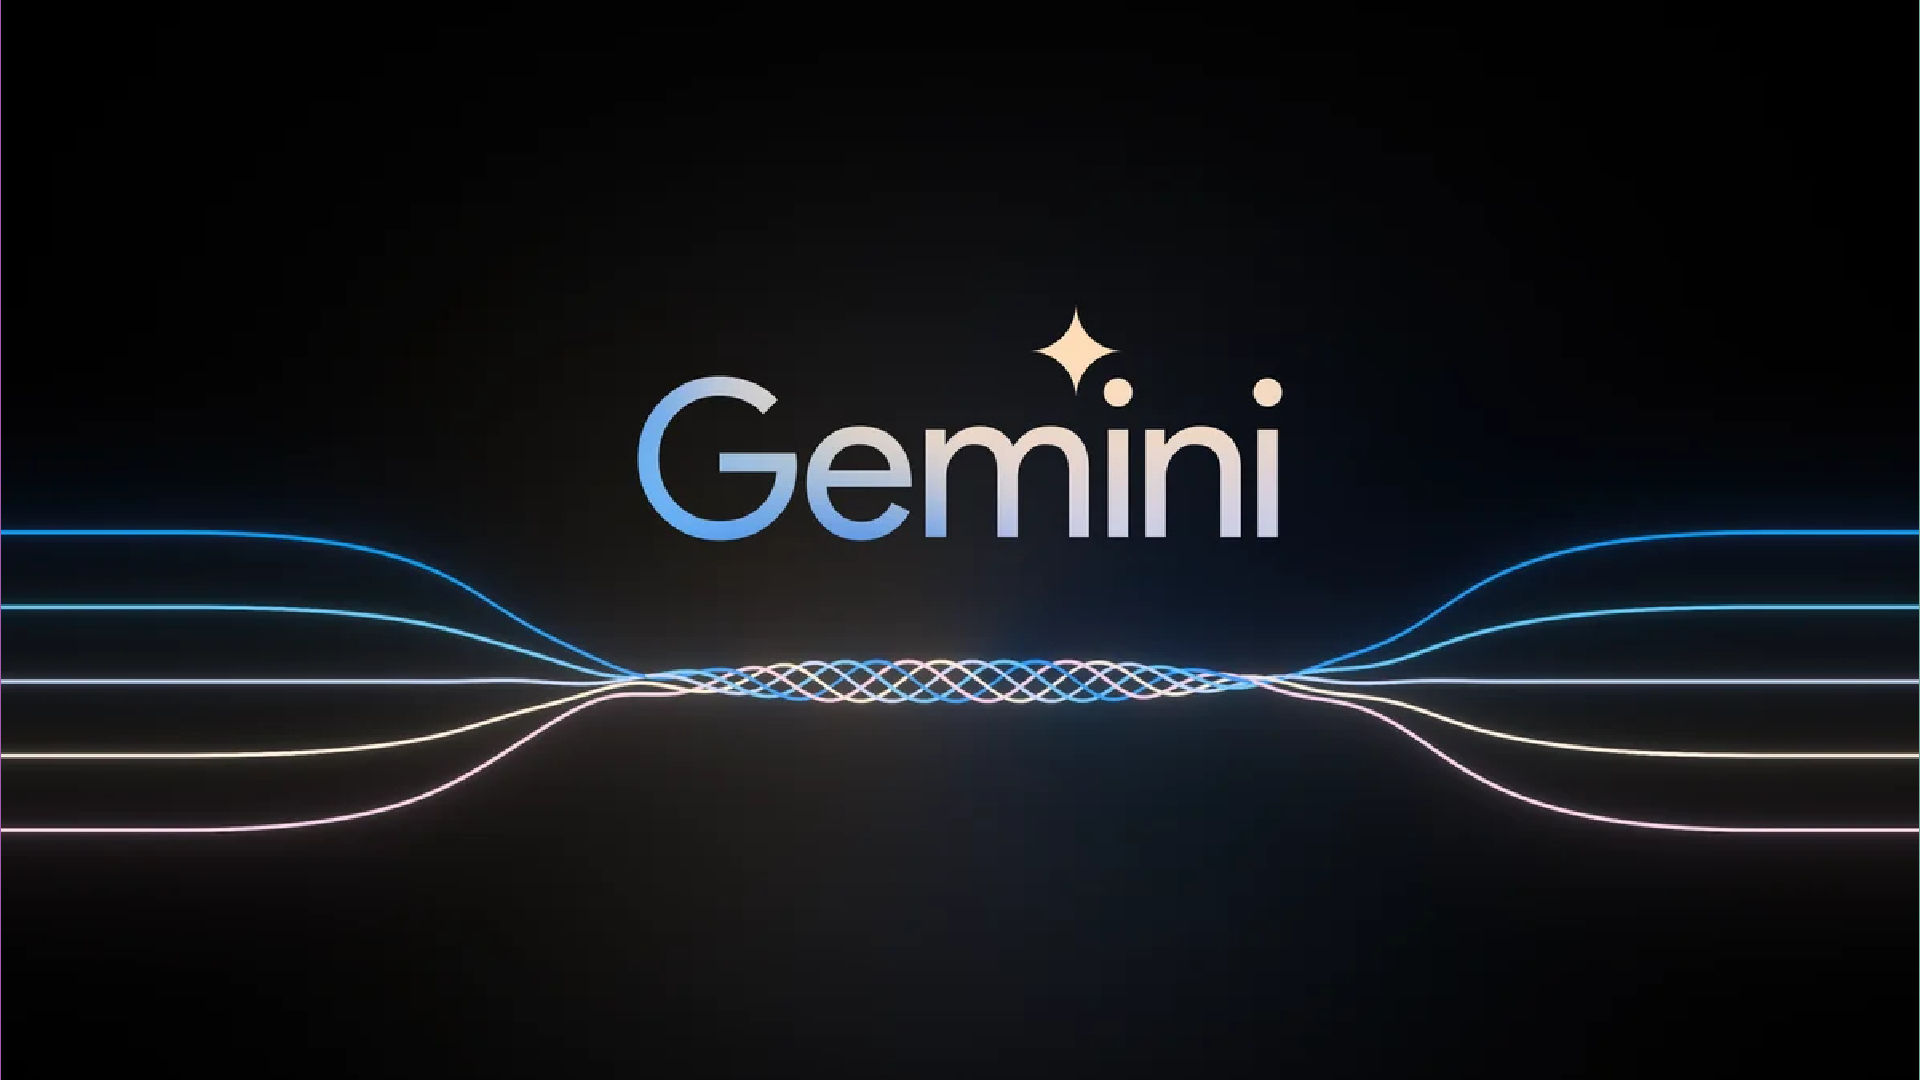 Google Gemini Features